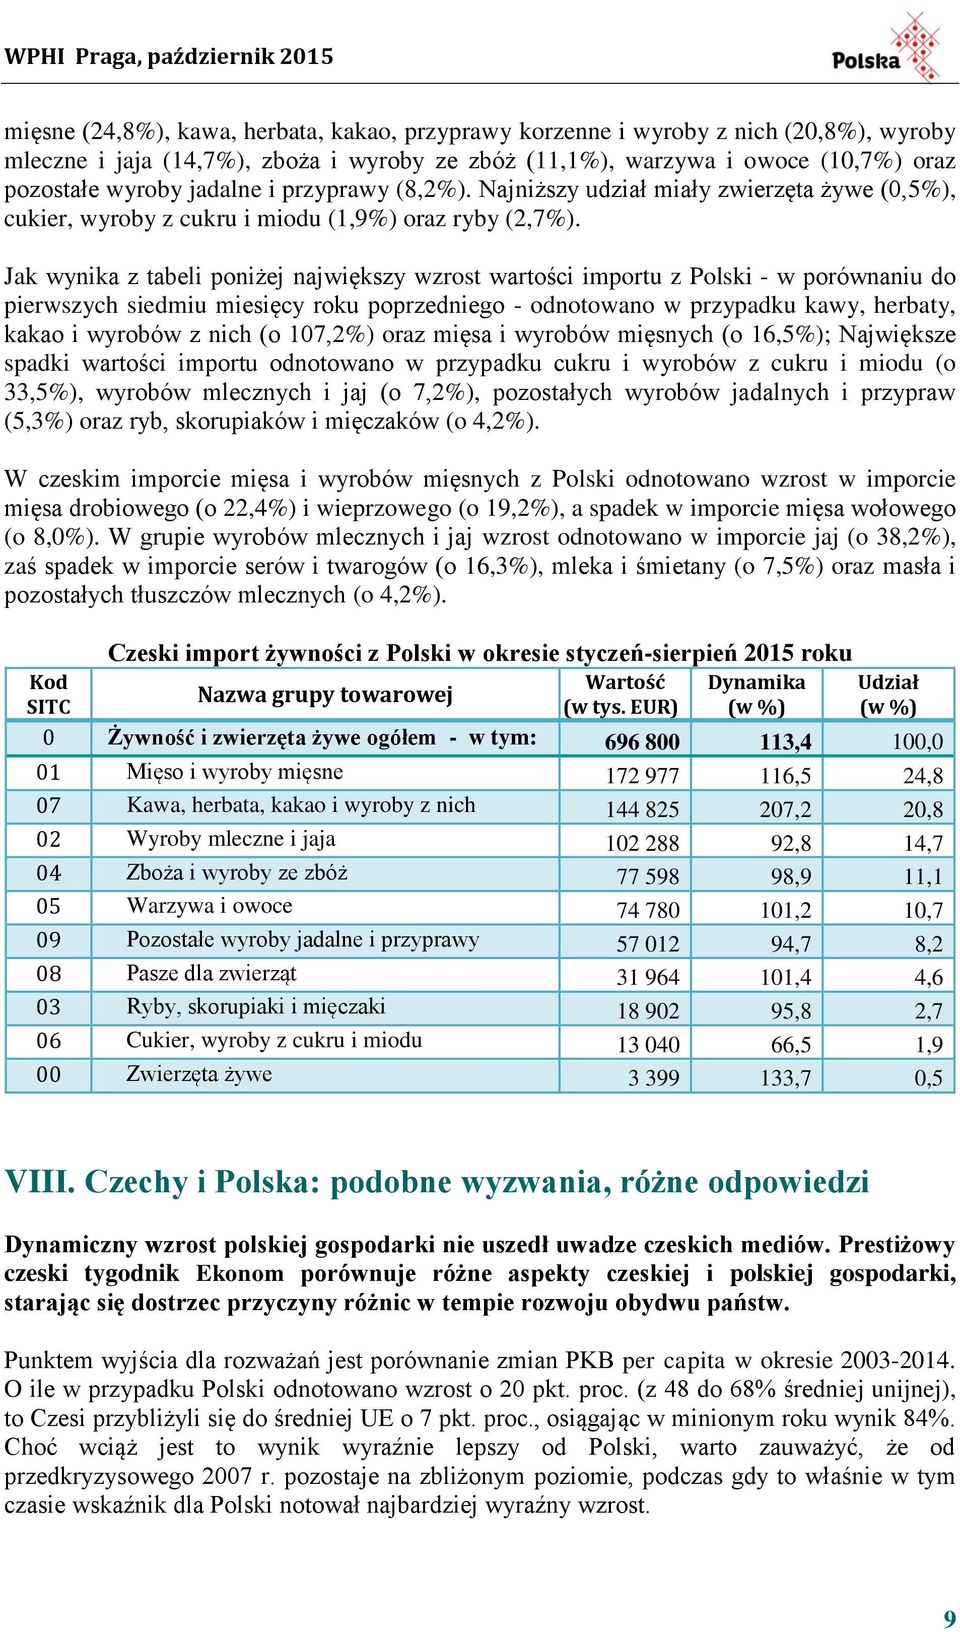 Jak wynika z tabeli poniżej największy wzrost wartości importu z Polski - w porównaniu do pierwszych siedmiu miesięcy roku poprzedniego - odnotowano w przypadku kawy, herbaty, kakao i wyrobów z nich